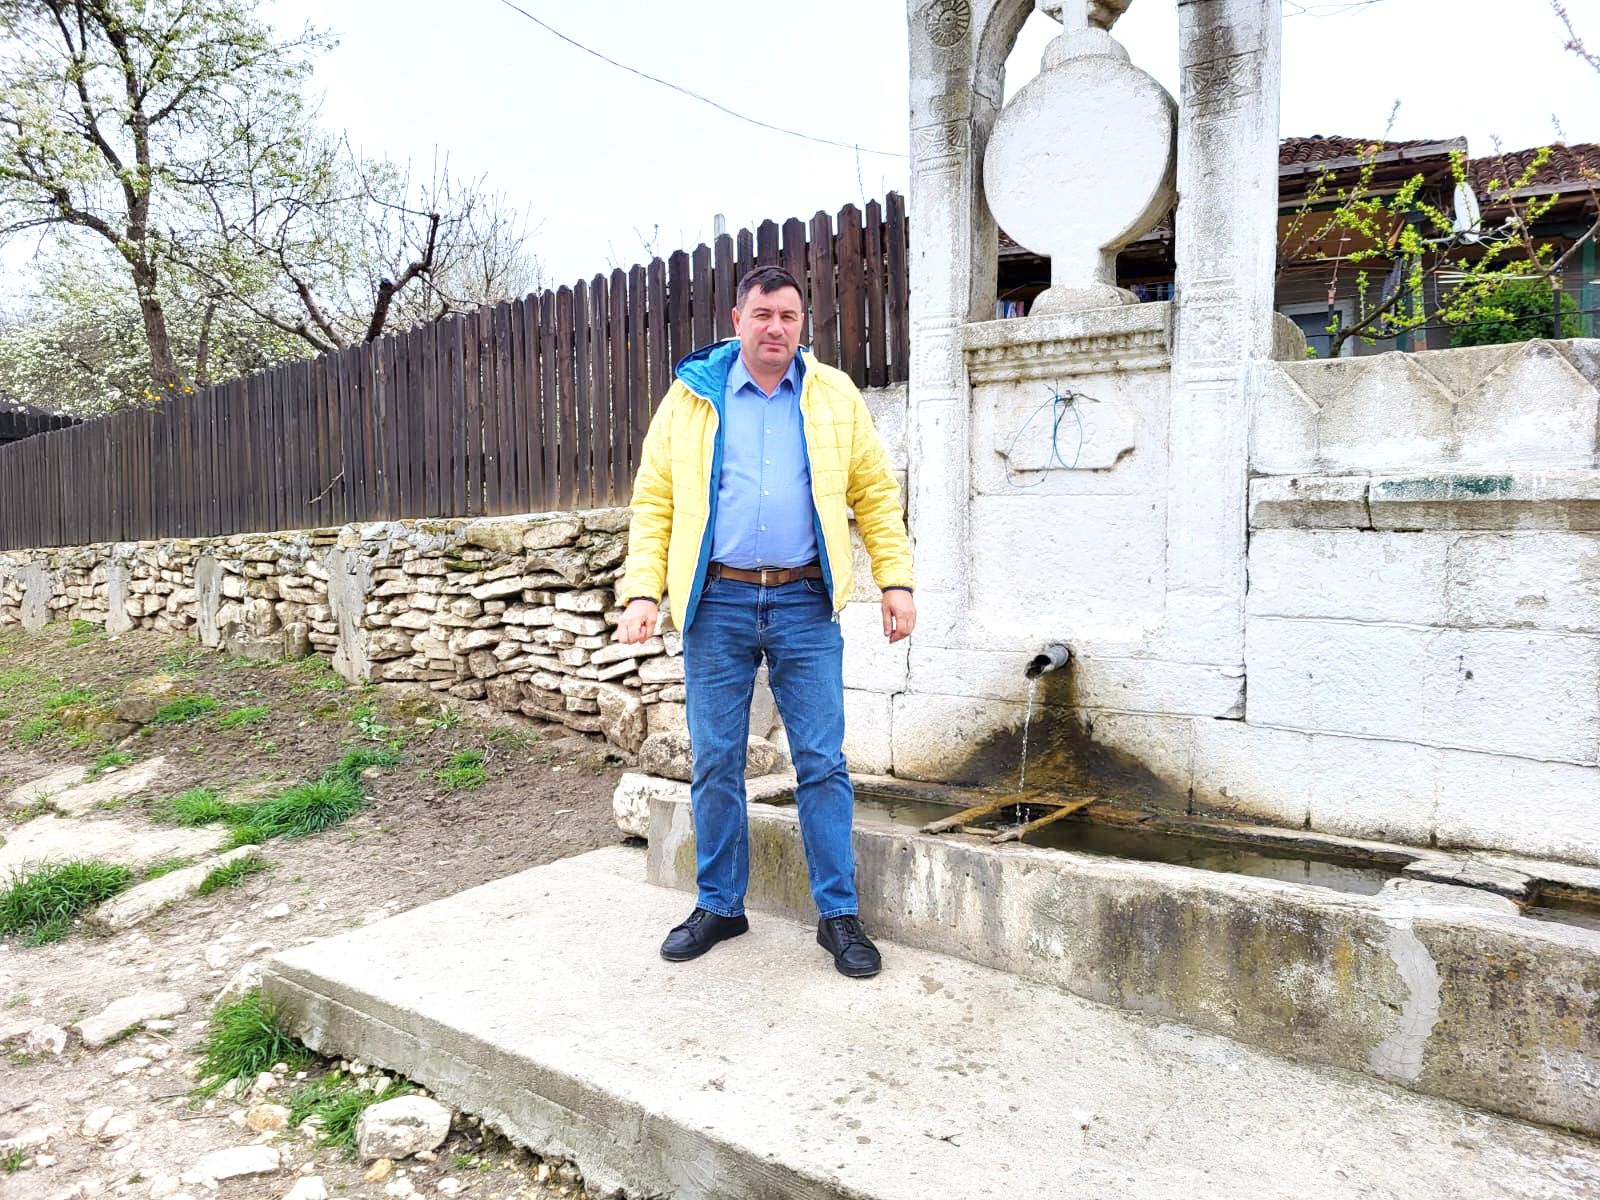 Primarul din Lipniţa, Florin Nicolae Dinu, despre proiectele şi viaţa din localitatea aflată la 100 km de Constanţa - fond-lipnita-1711739616.jpg